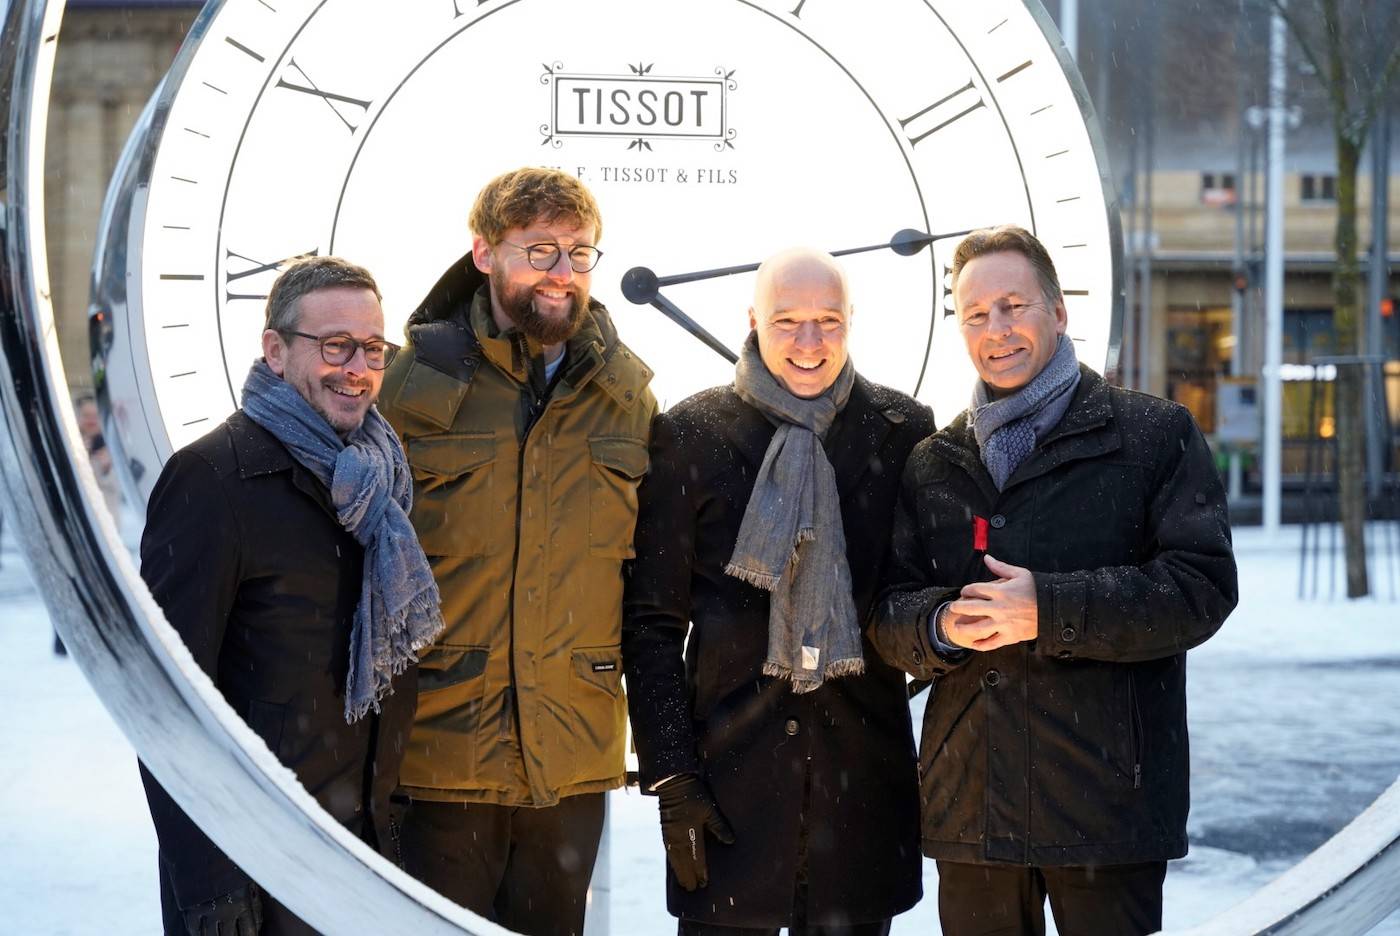 À La Chaux-de-Fonds, une spectaculaire horloge Tissot